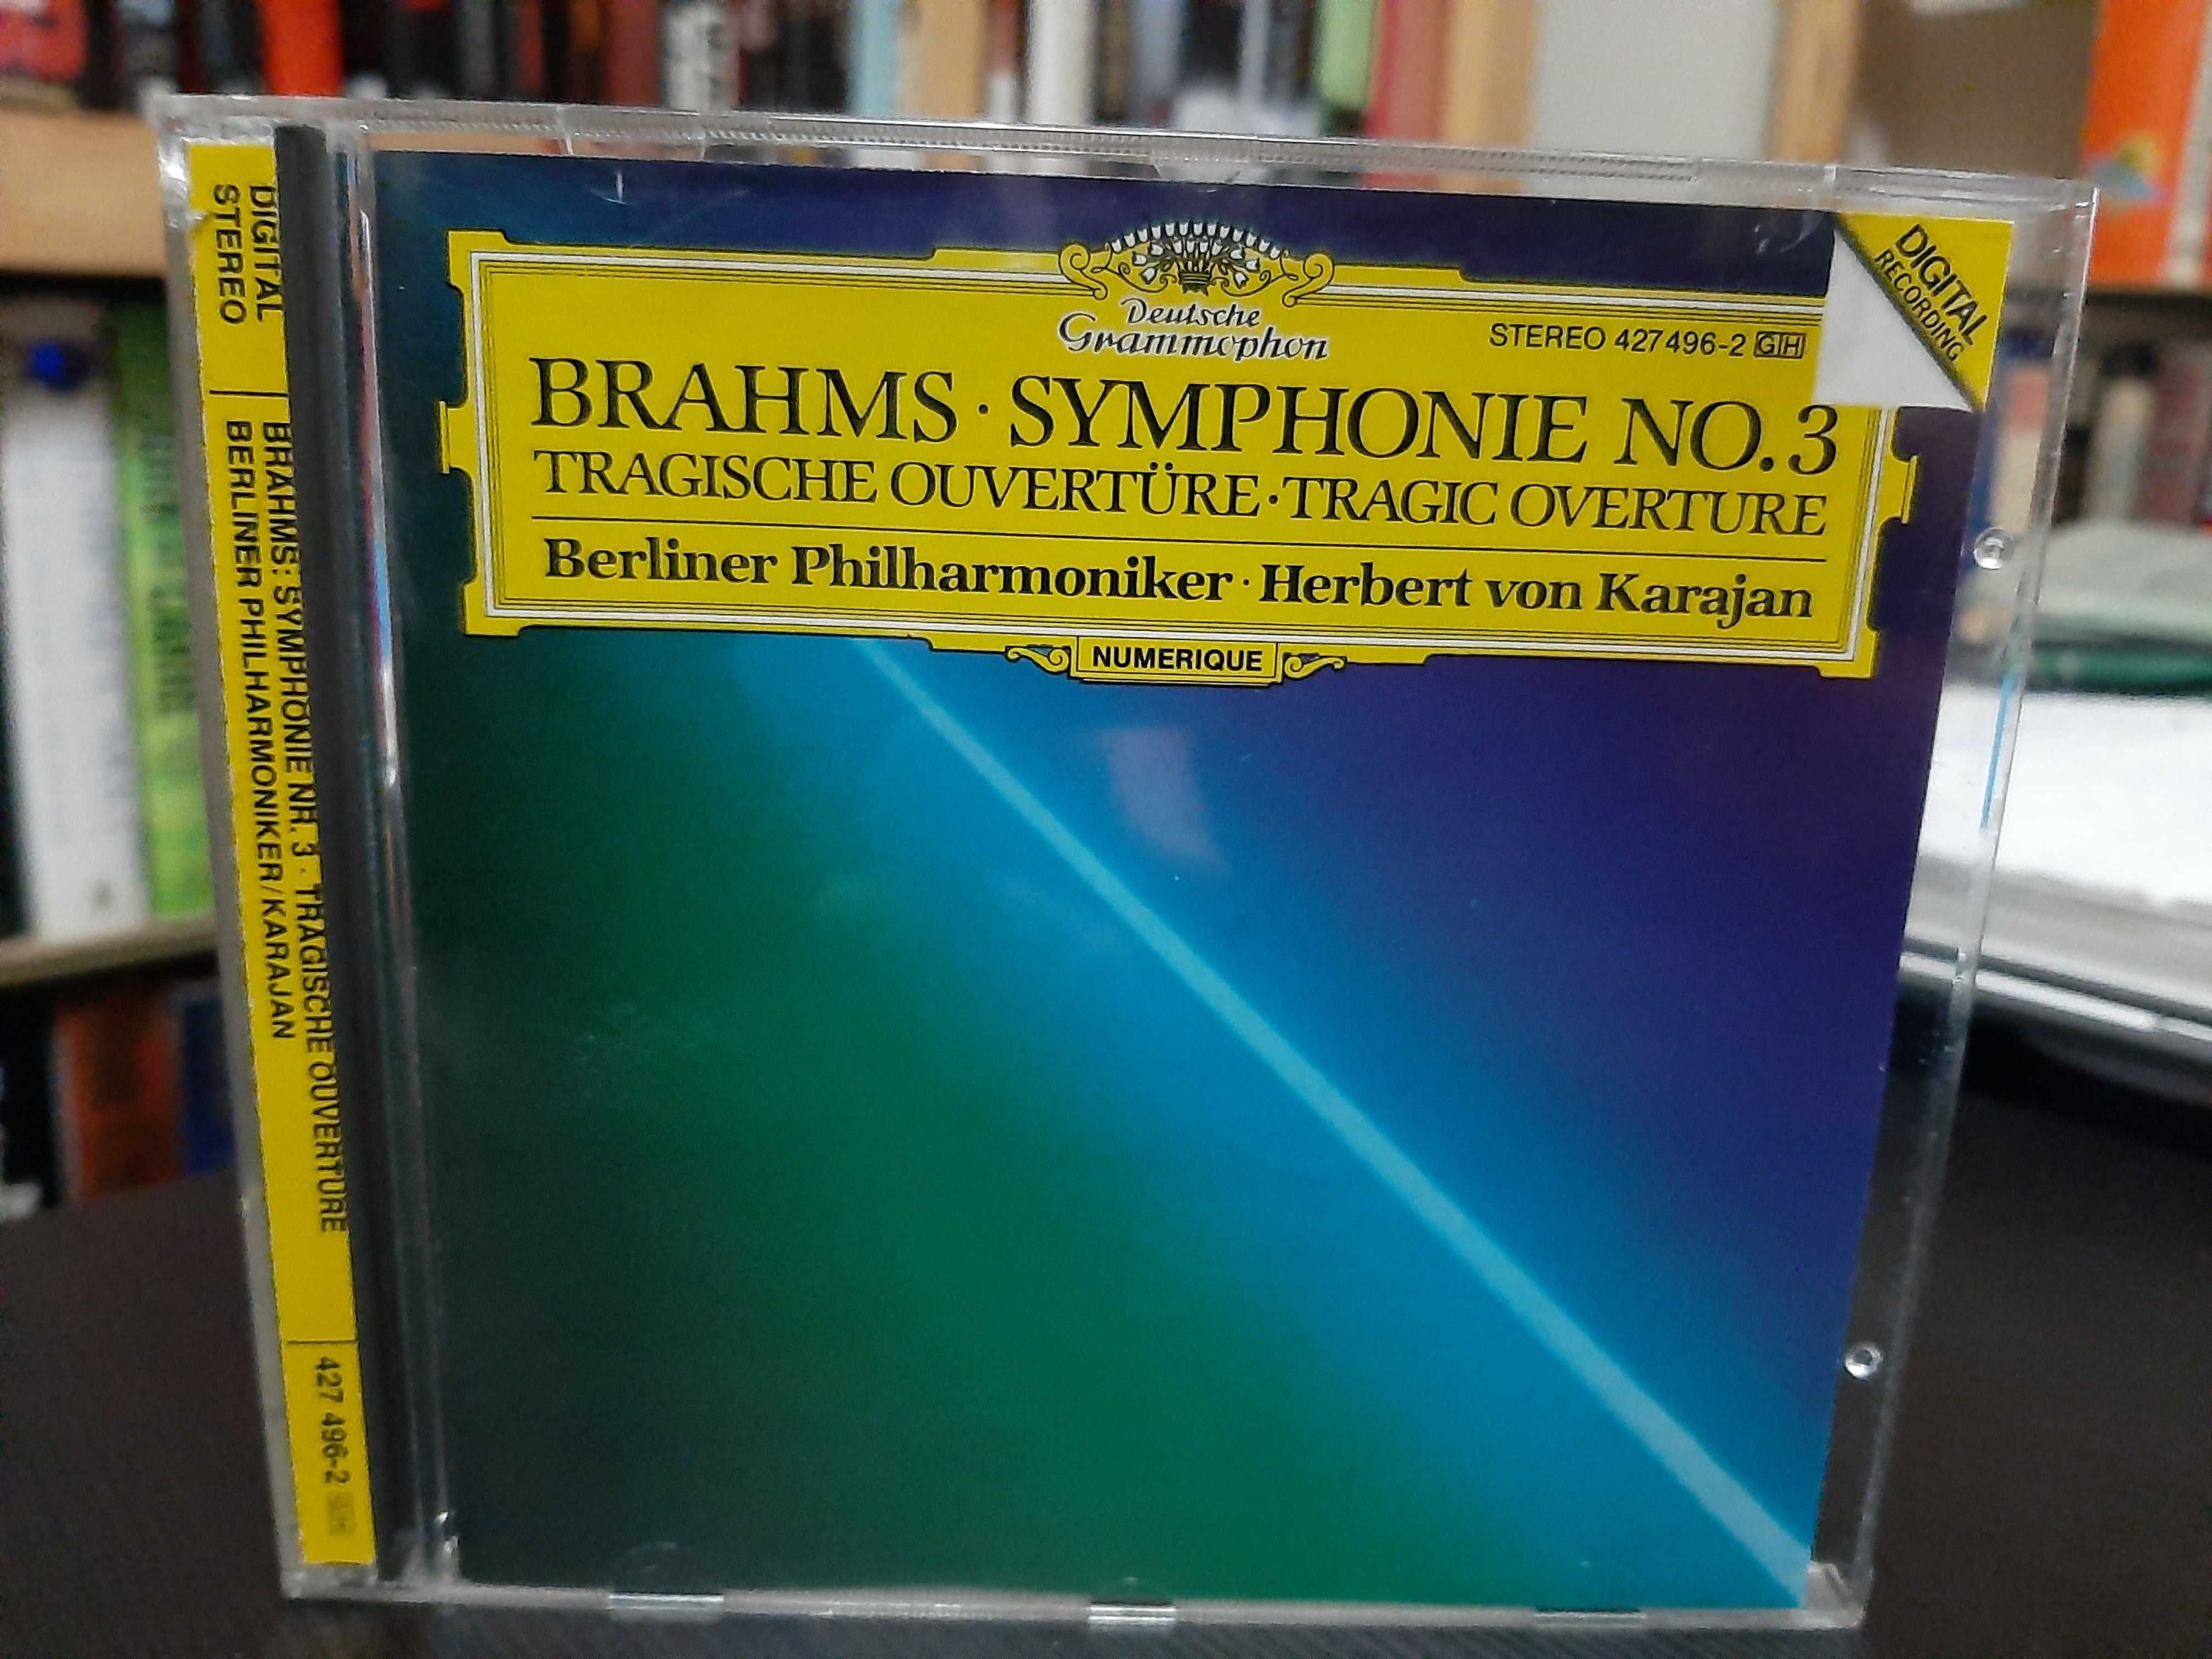 Brahms – Symphonie N. 3, Tragic Overture – Berliner Philarmon, Karajan